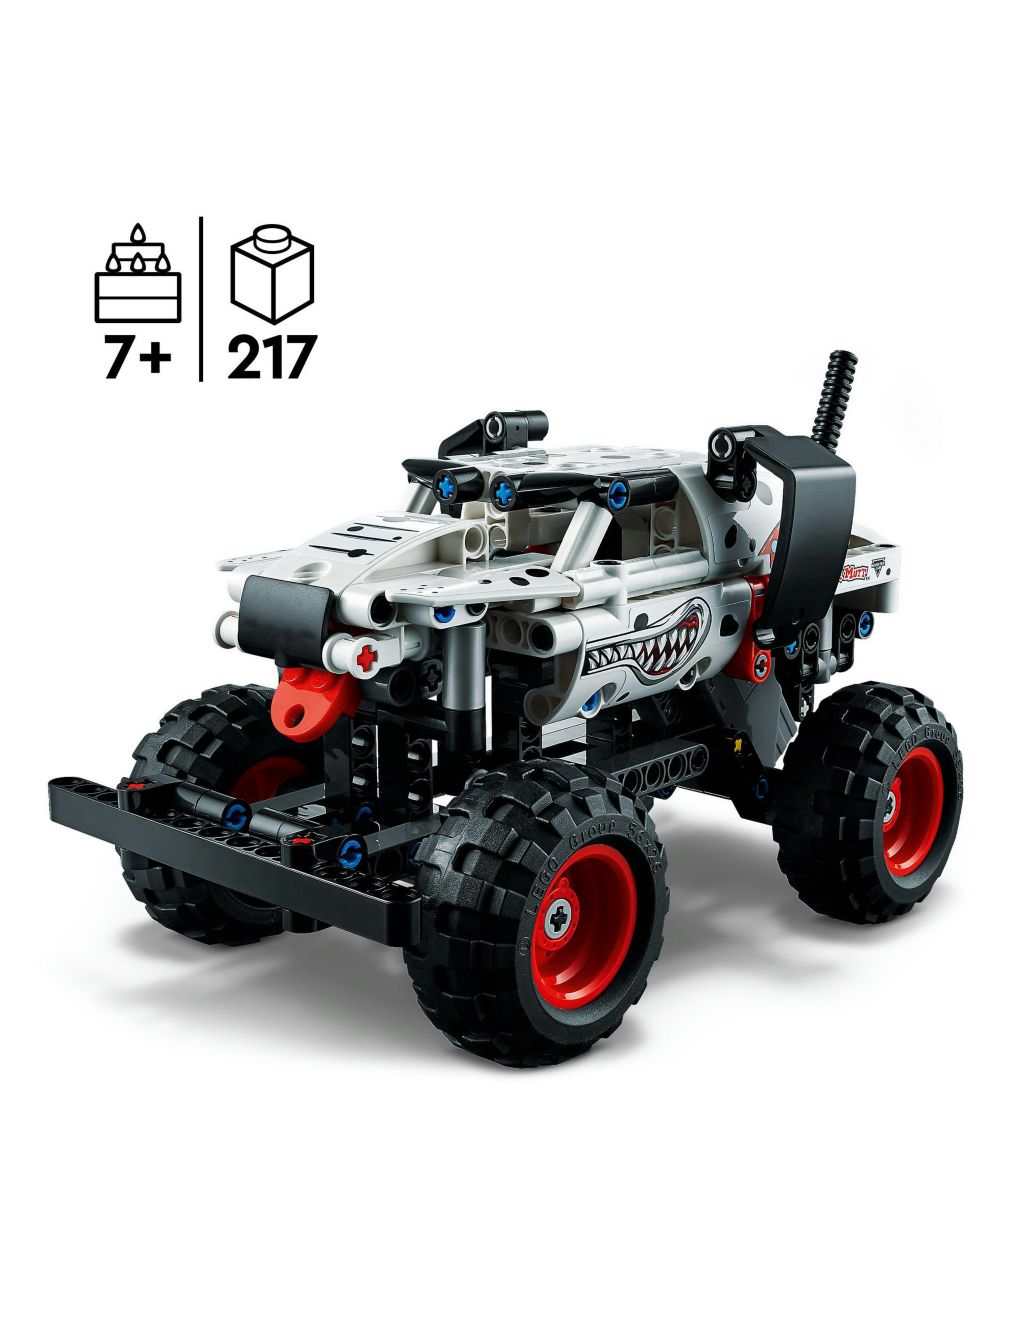 LEGO Technic Monster Jam Monster Mutt Dalmatian 42150 (7+ Yrs) 1 of 6